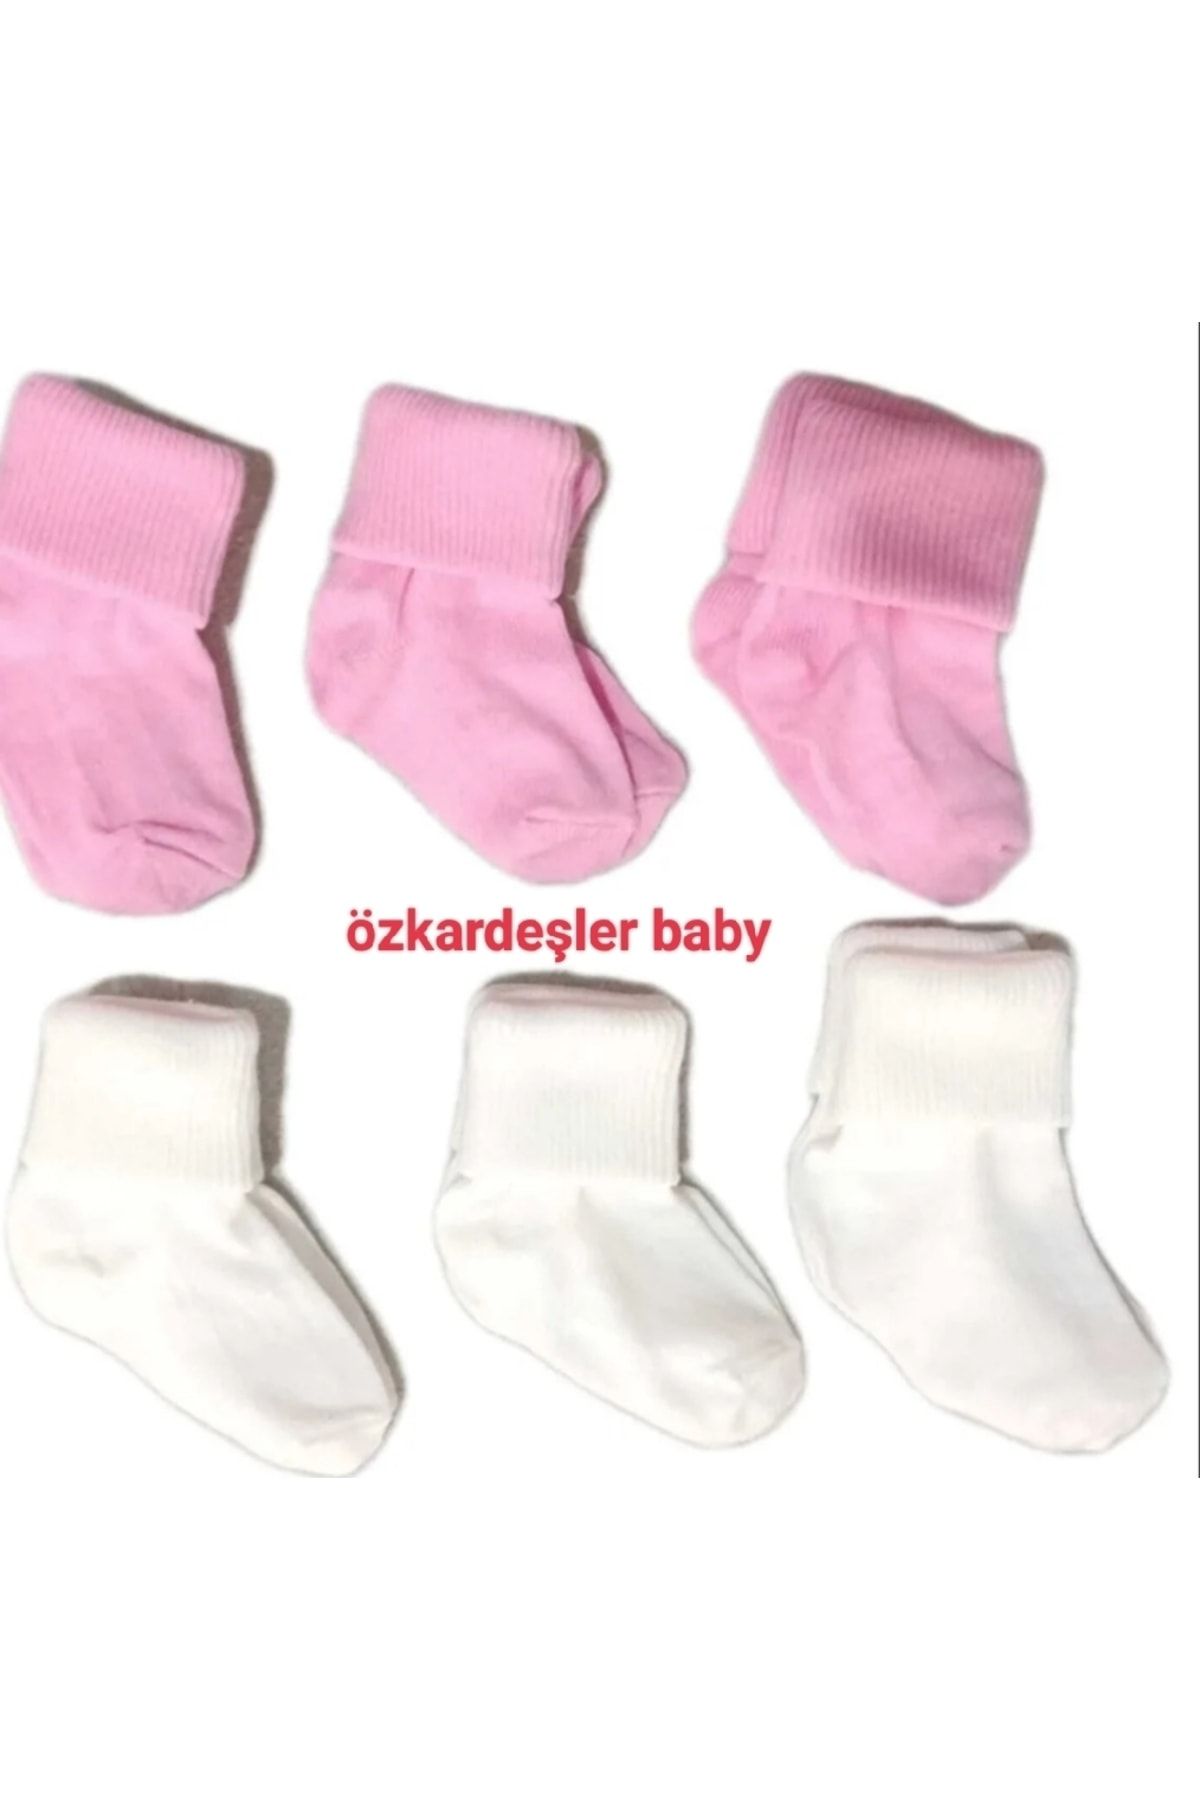 ÖZKARDEŞLER BABY Bebek Kıvrık Çorap 6lı